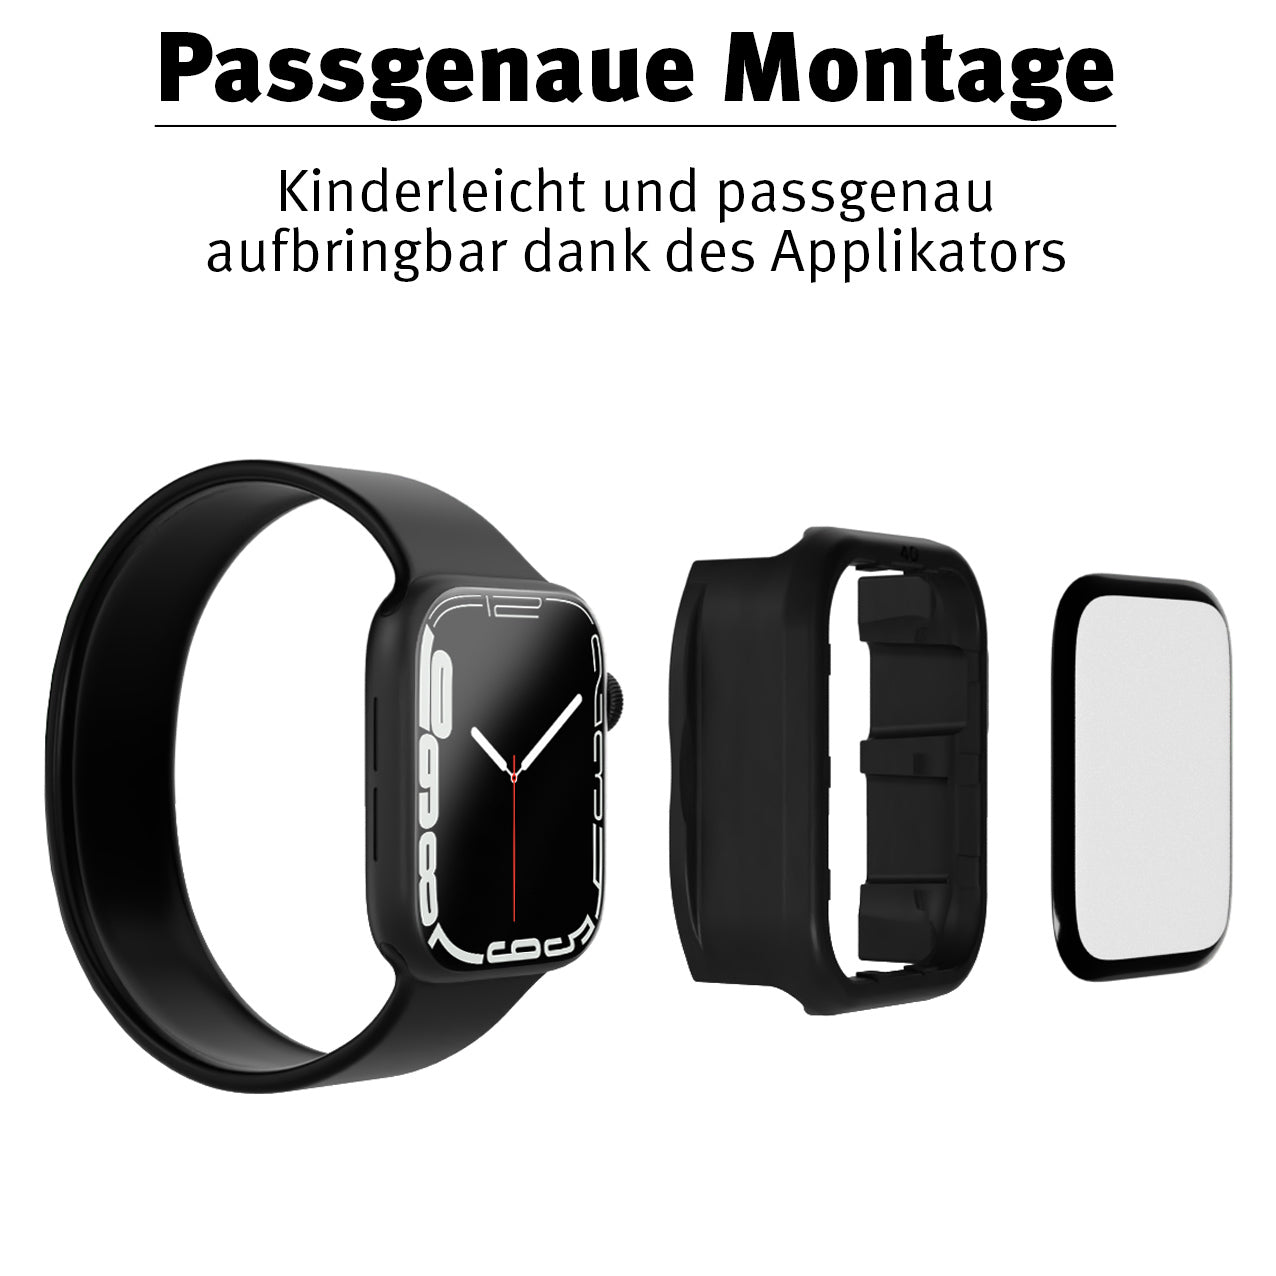 Beastprotect Apple Watch Schutzfolie HYBRID 3D